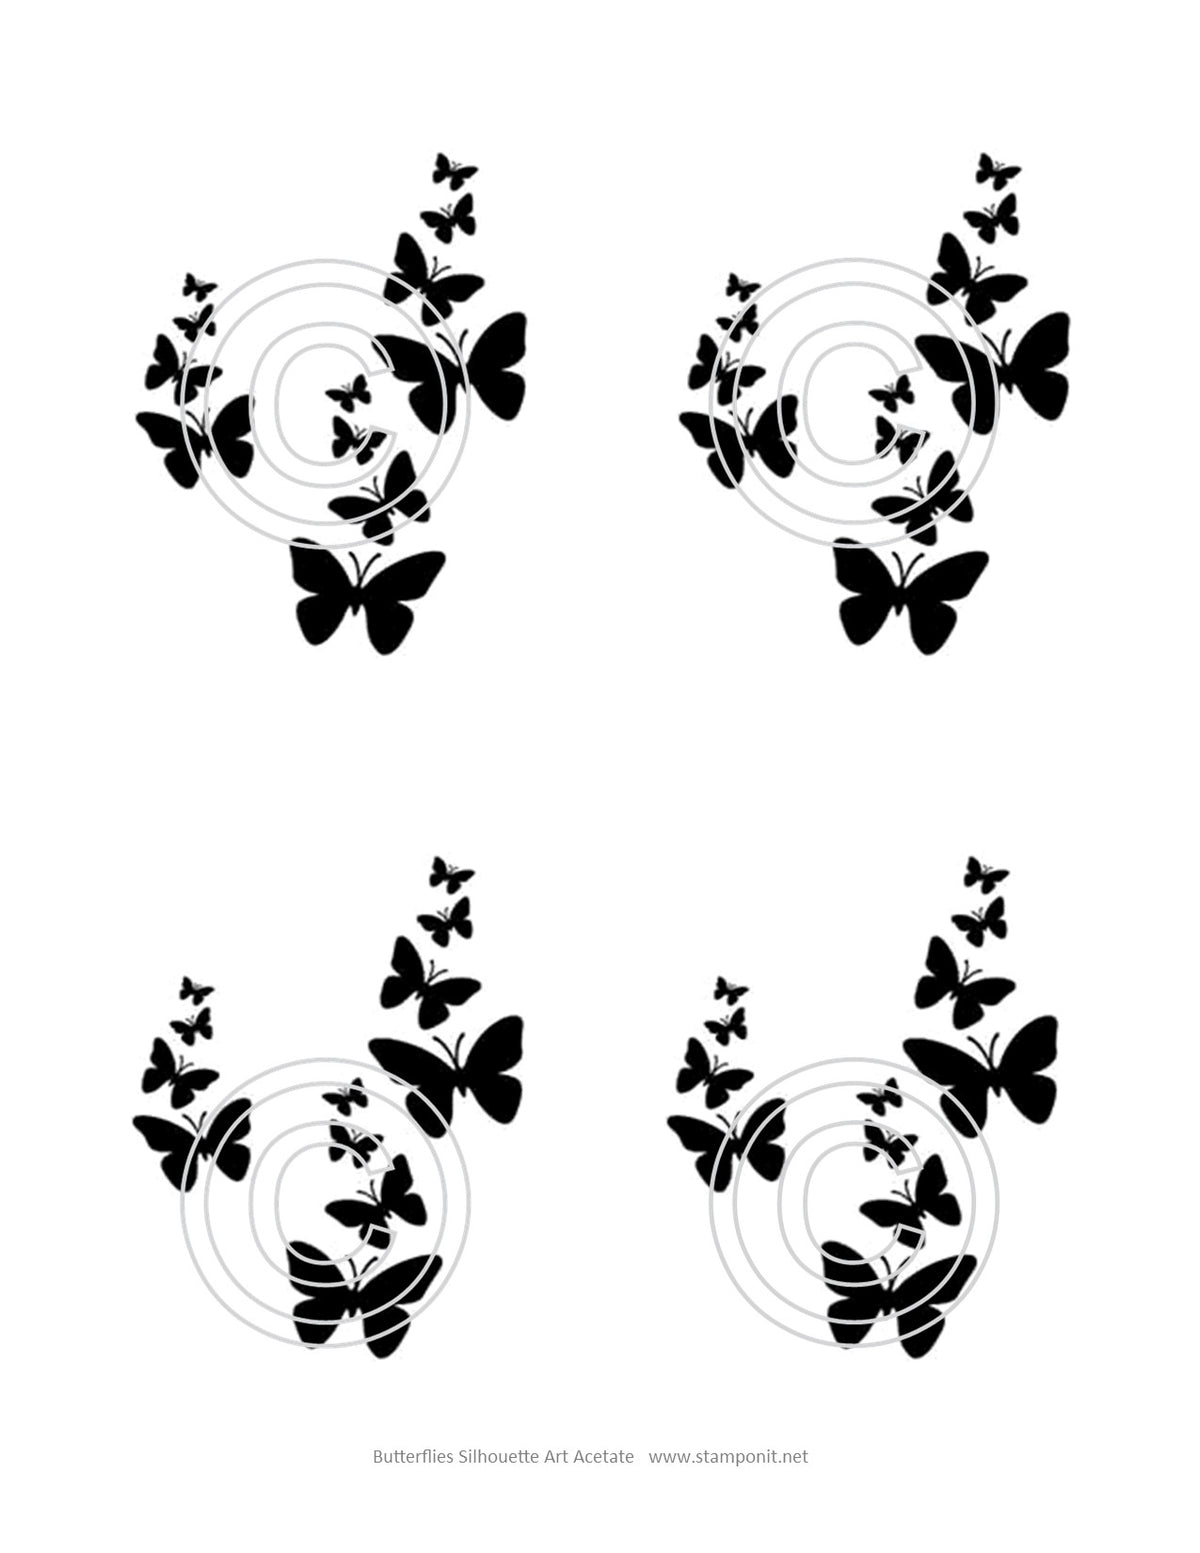 Butterflies Art Acetate Silhouette